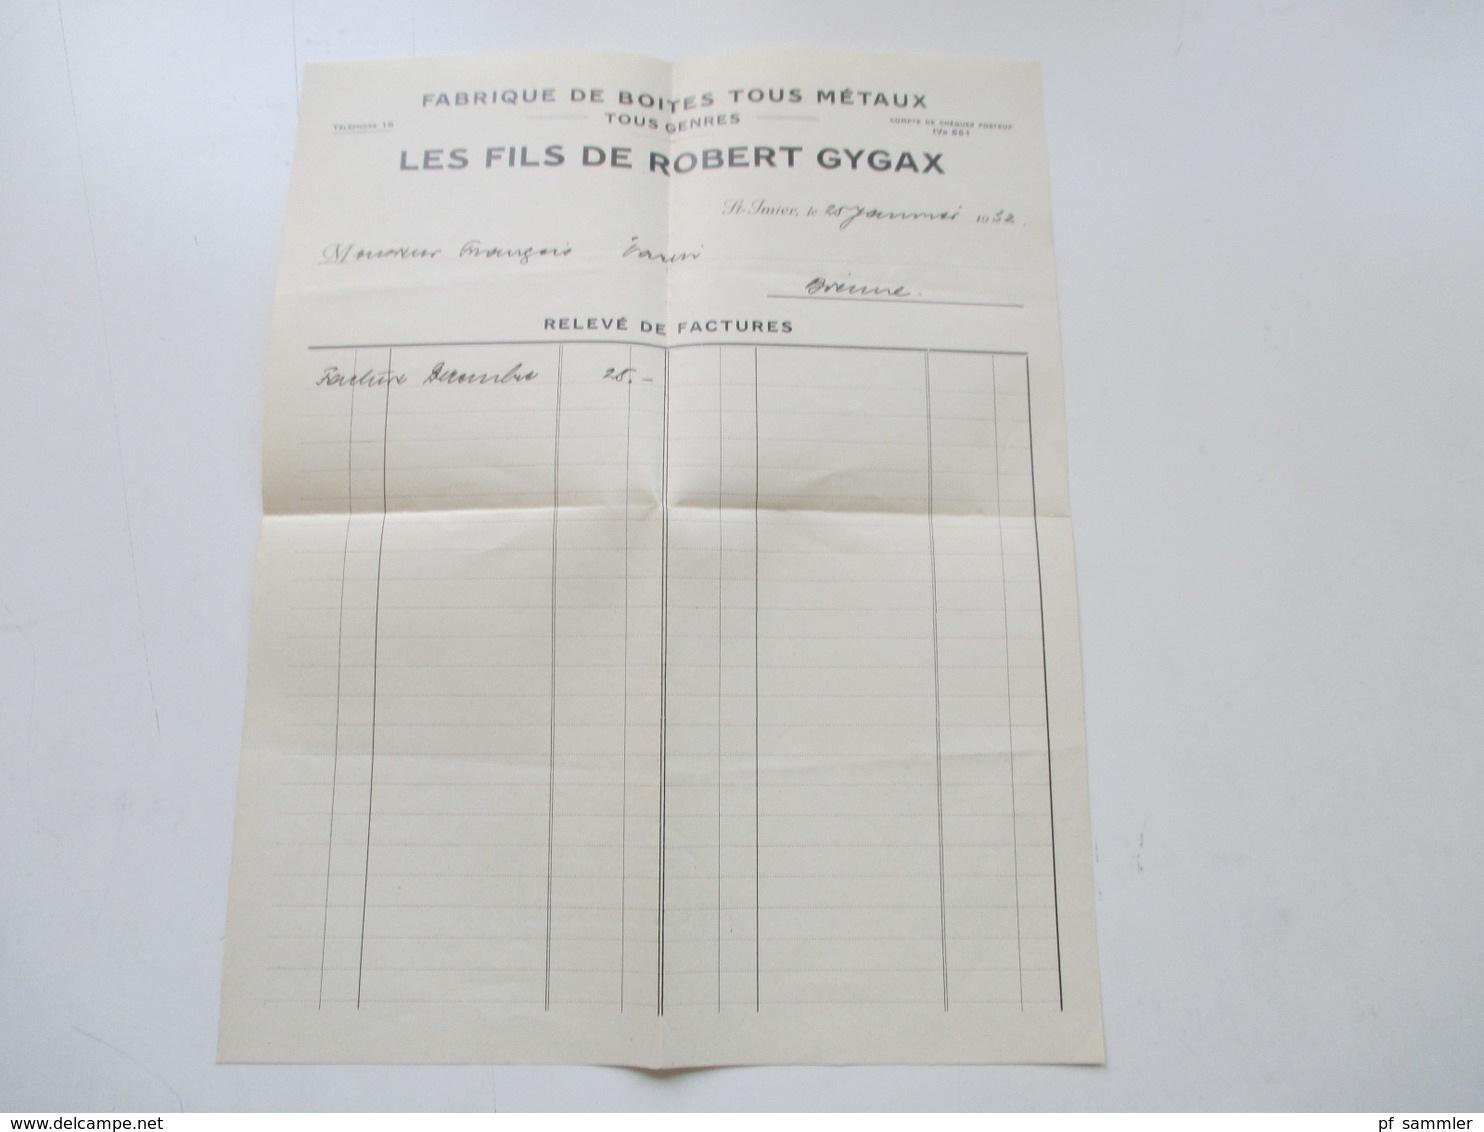 Schweiz 1932 Dokument / Rechnung Fabrique De Boites Tous Metaux Tous Genres Les Fils De Robert Gygax St. Imier - Switzerland